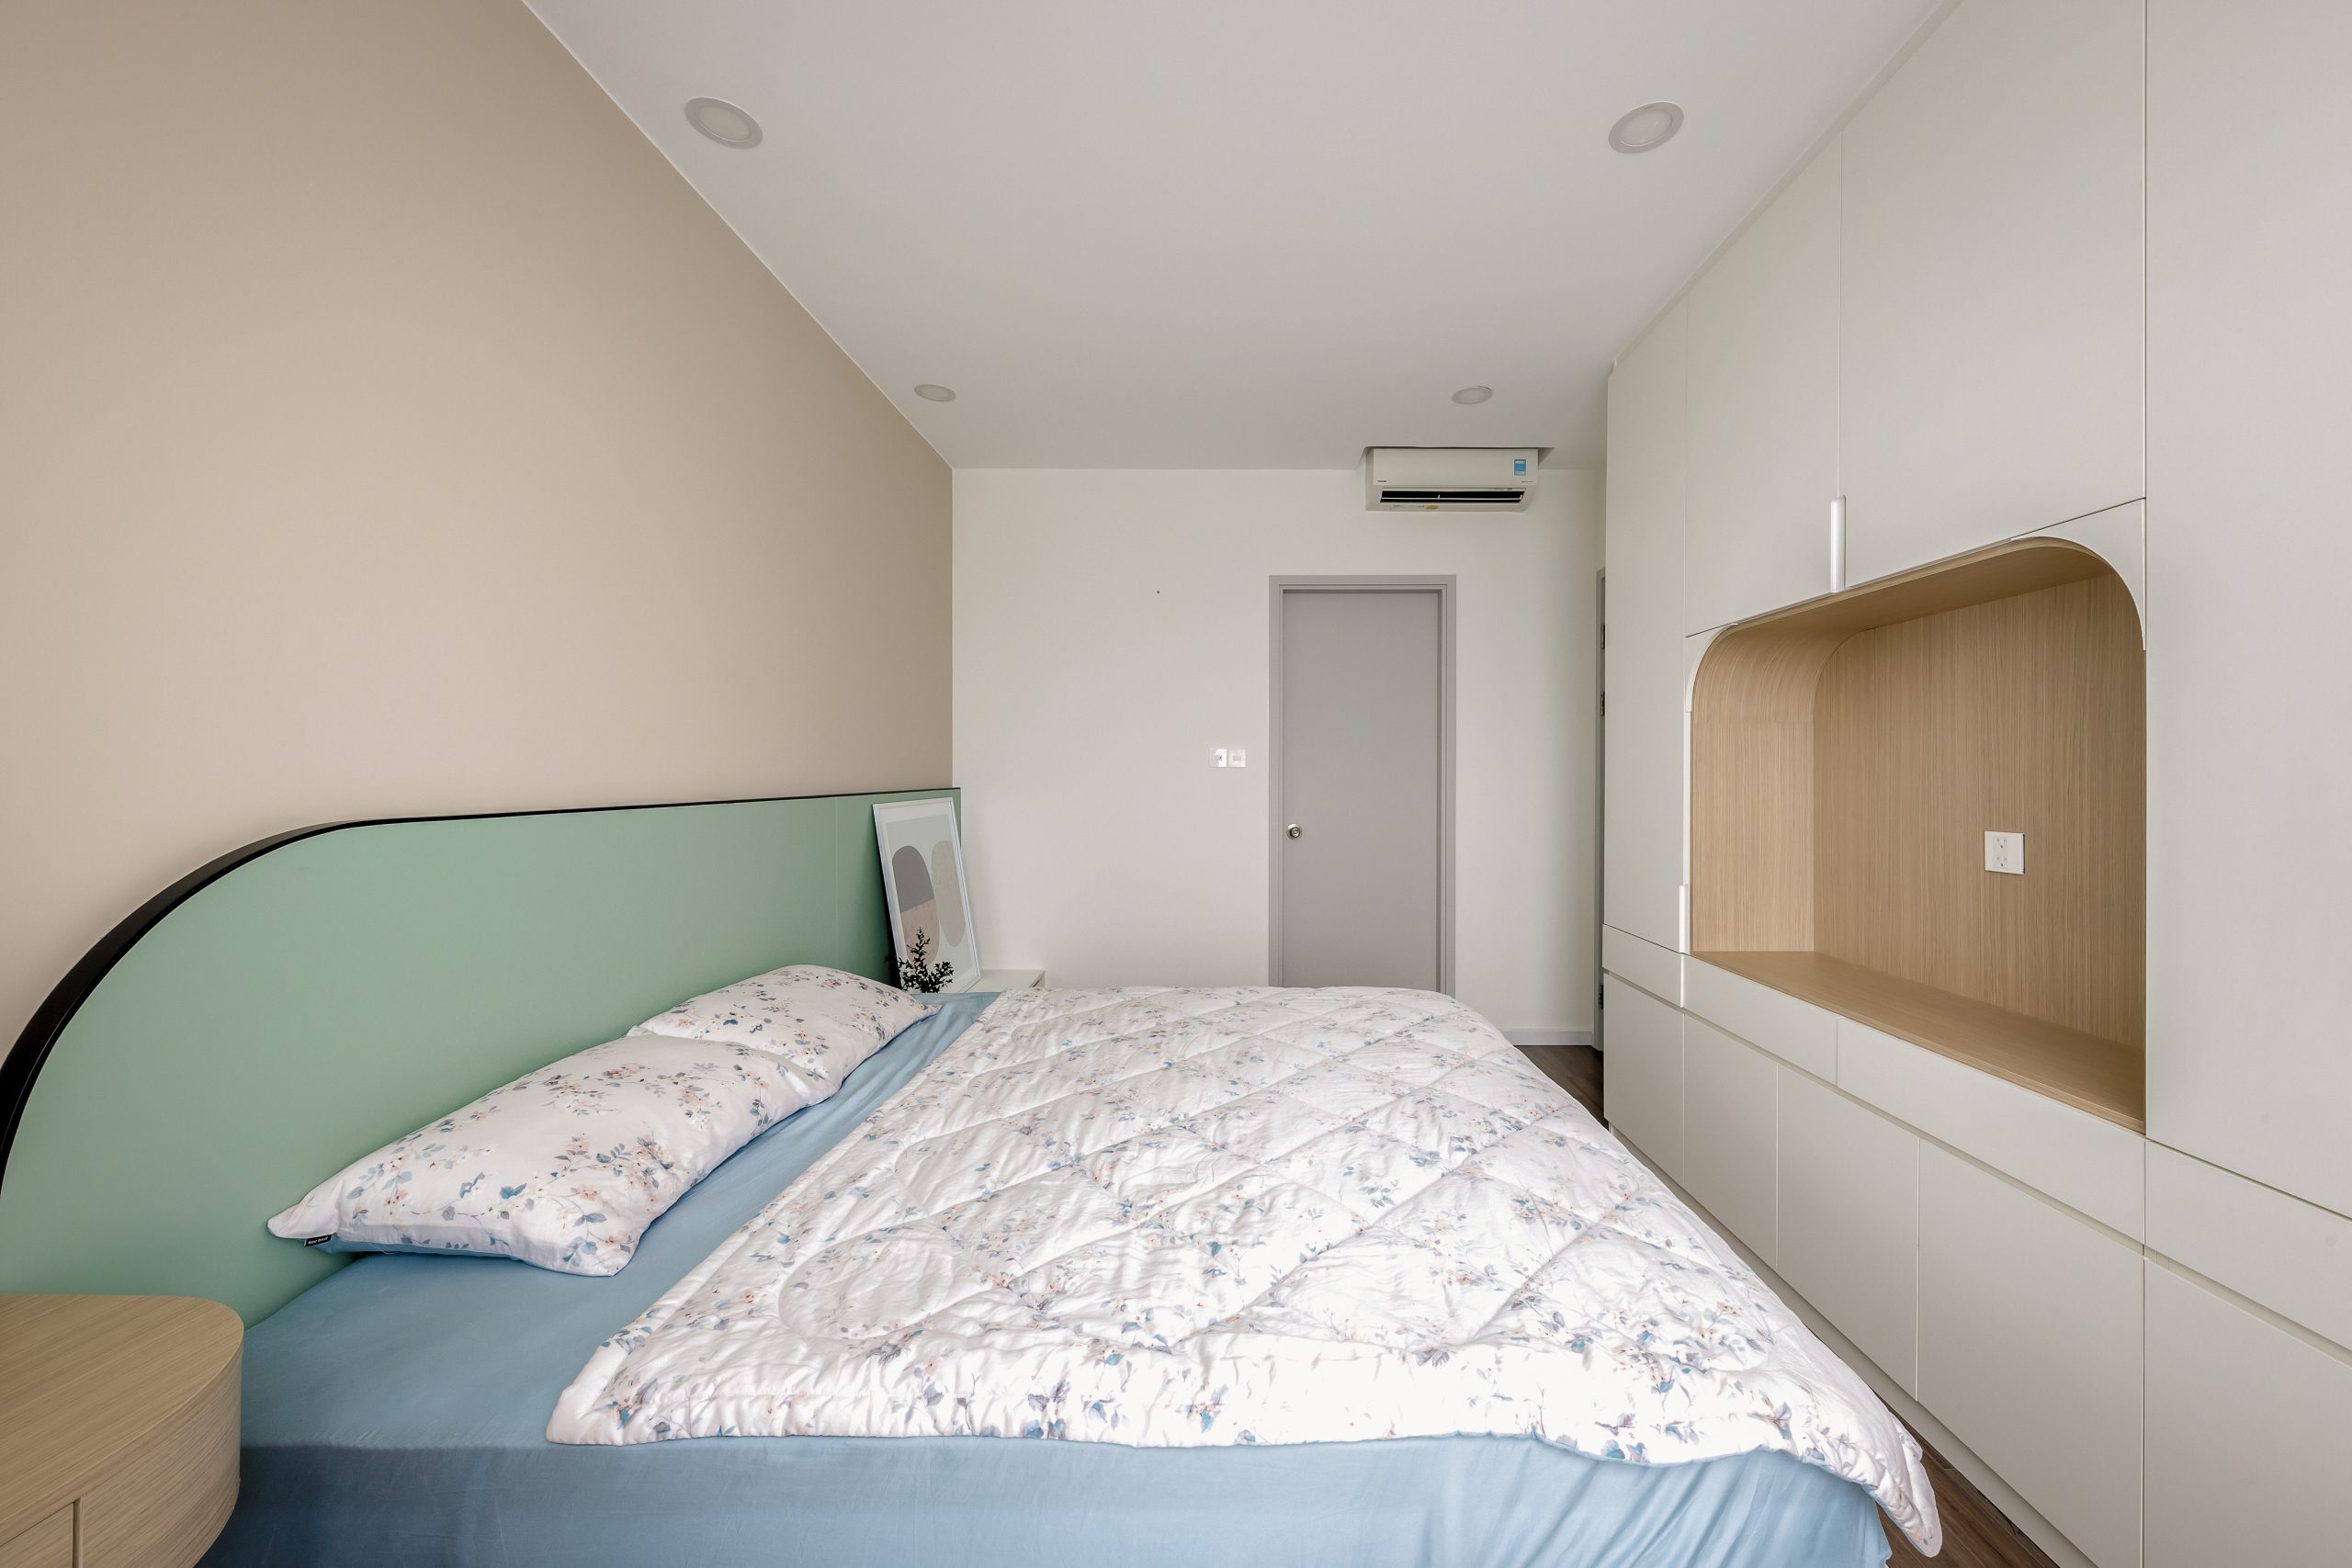 Phòng ngủ chính với gam màu phong cách Color Block